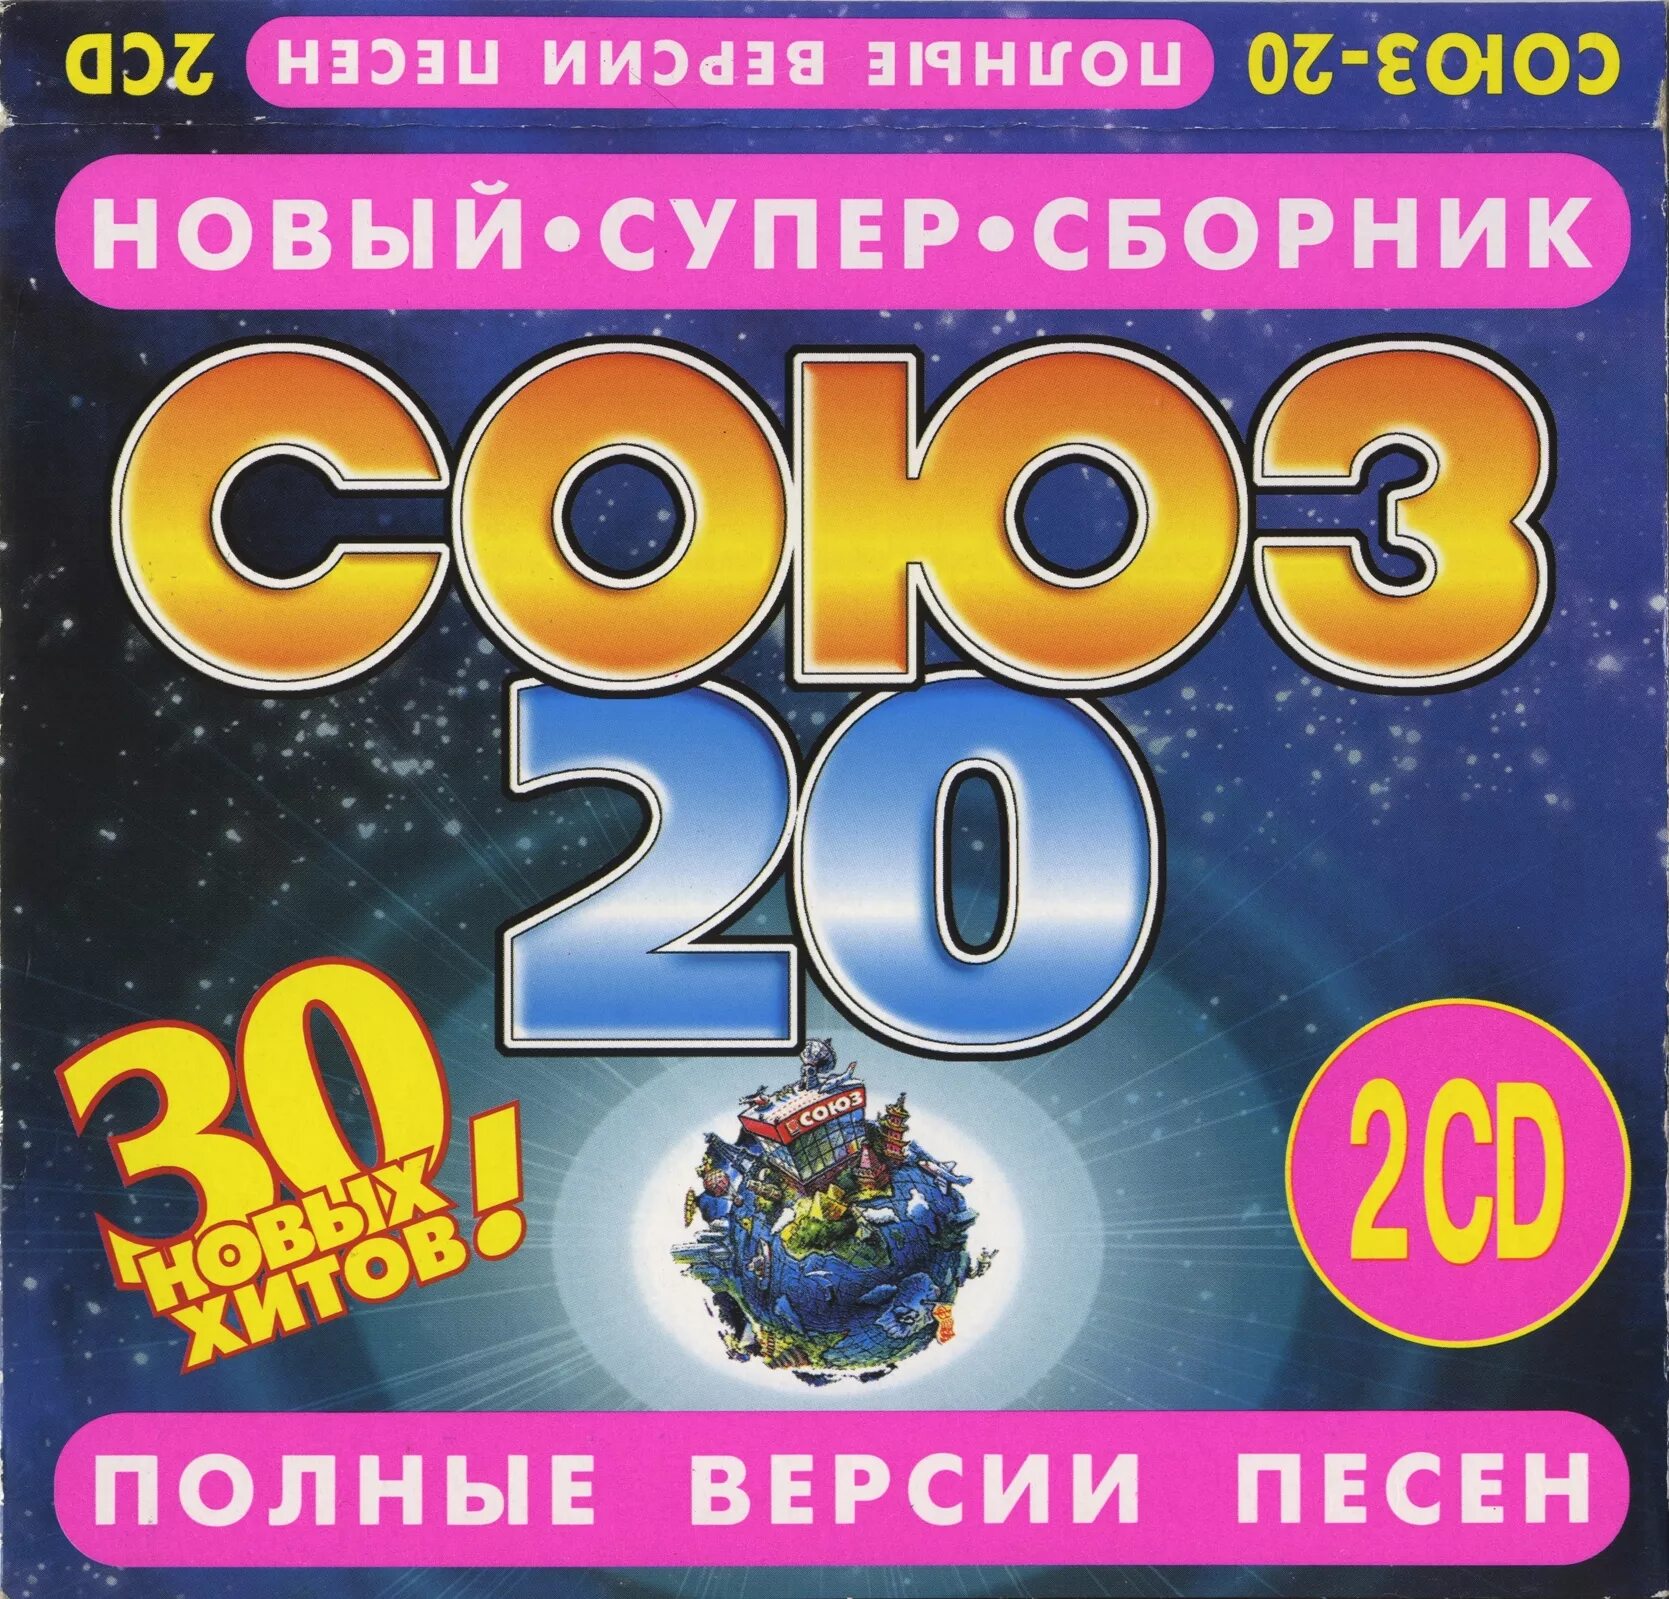 Полные сборники музыки. Союз 20 1997. Сборник Союз. Союз 20 1997 сборник. Сборник песен.